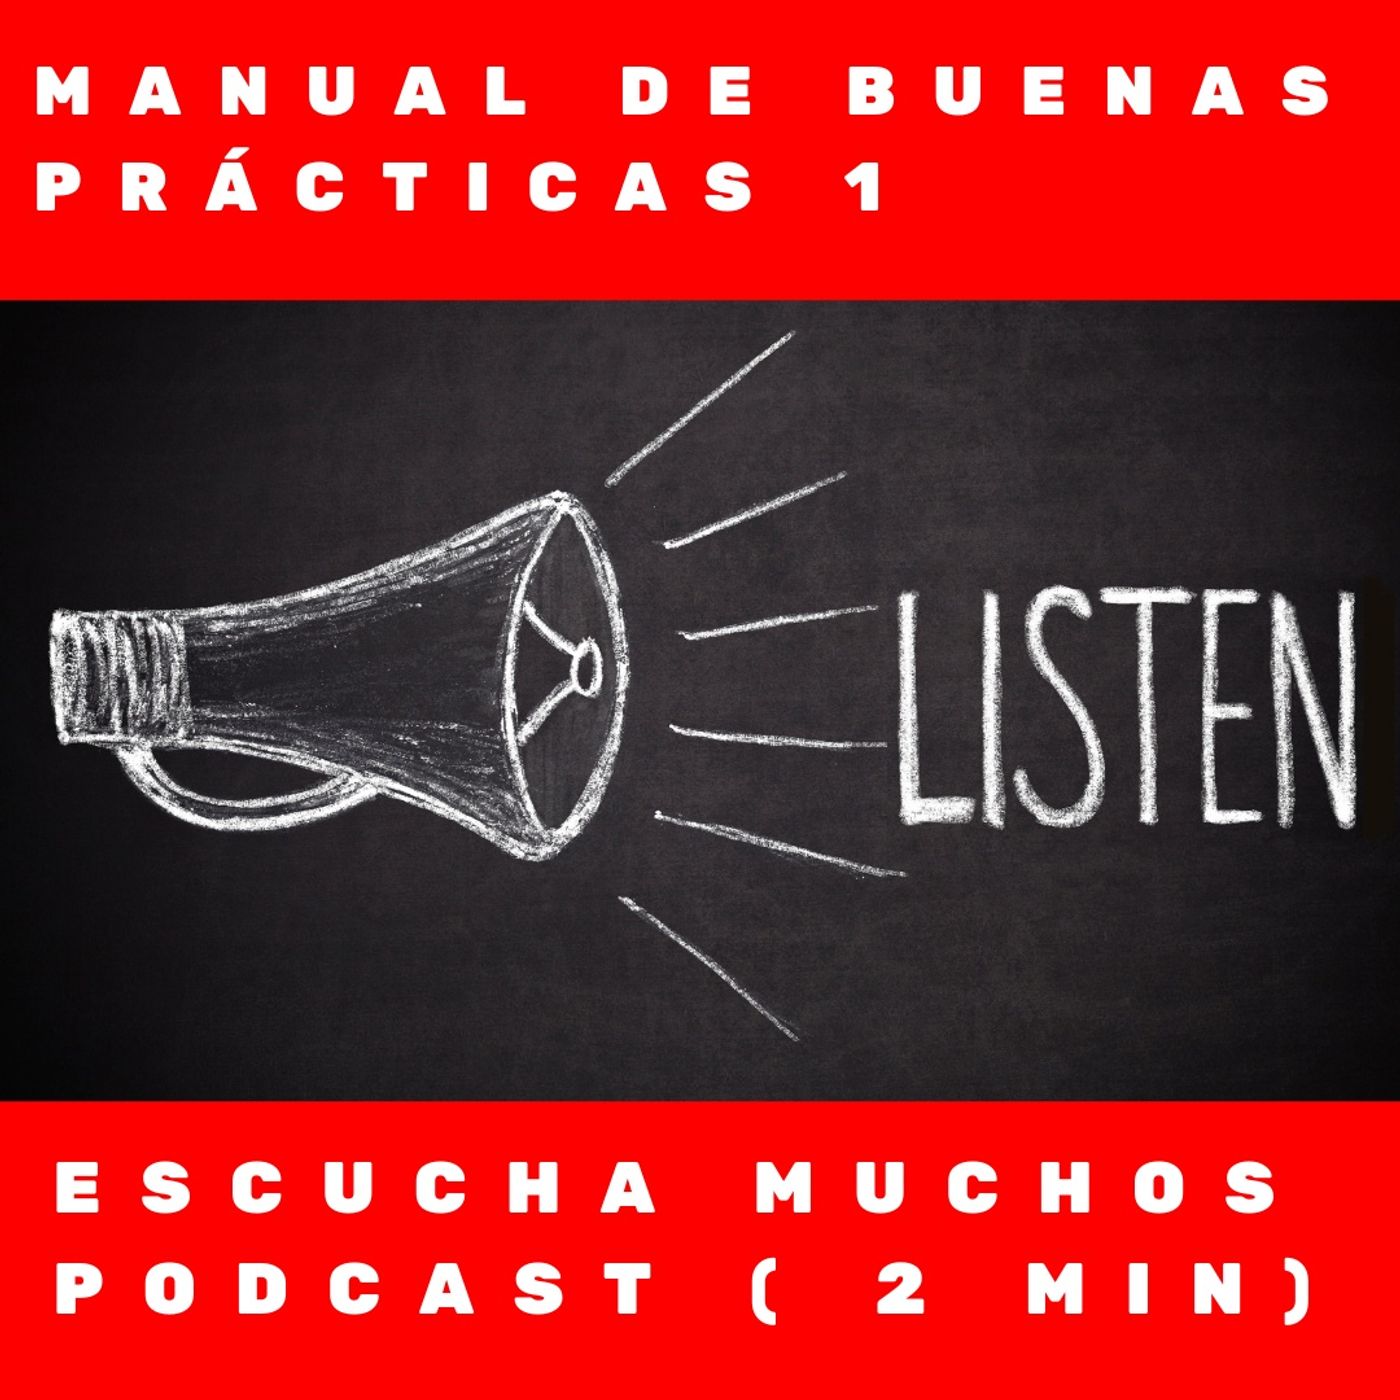 Manual de buenas prácticas 1- Escucha muchos podcasts